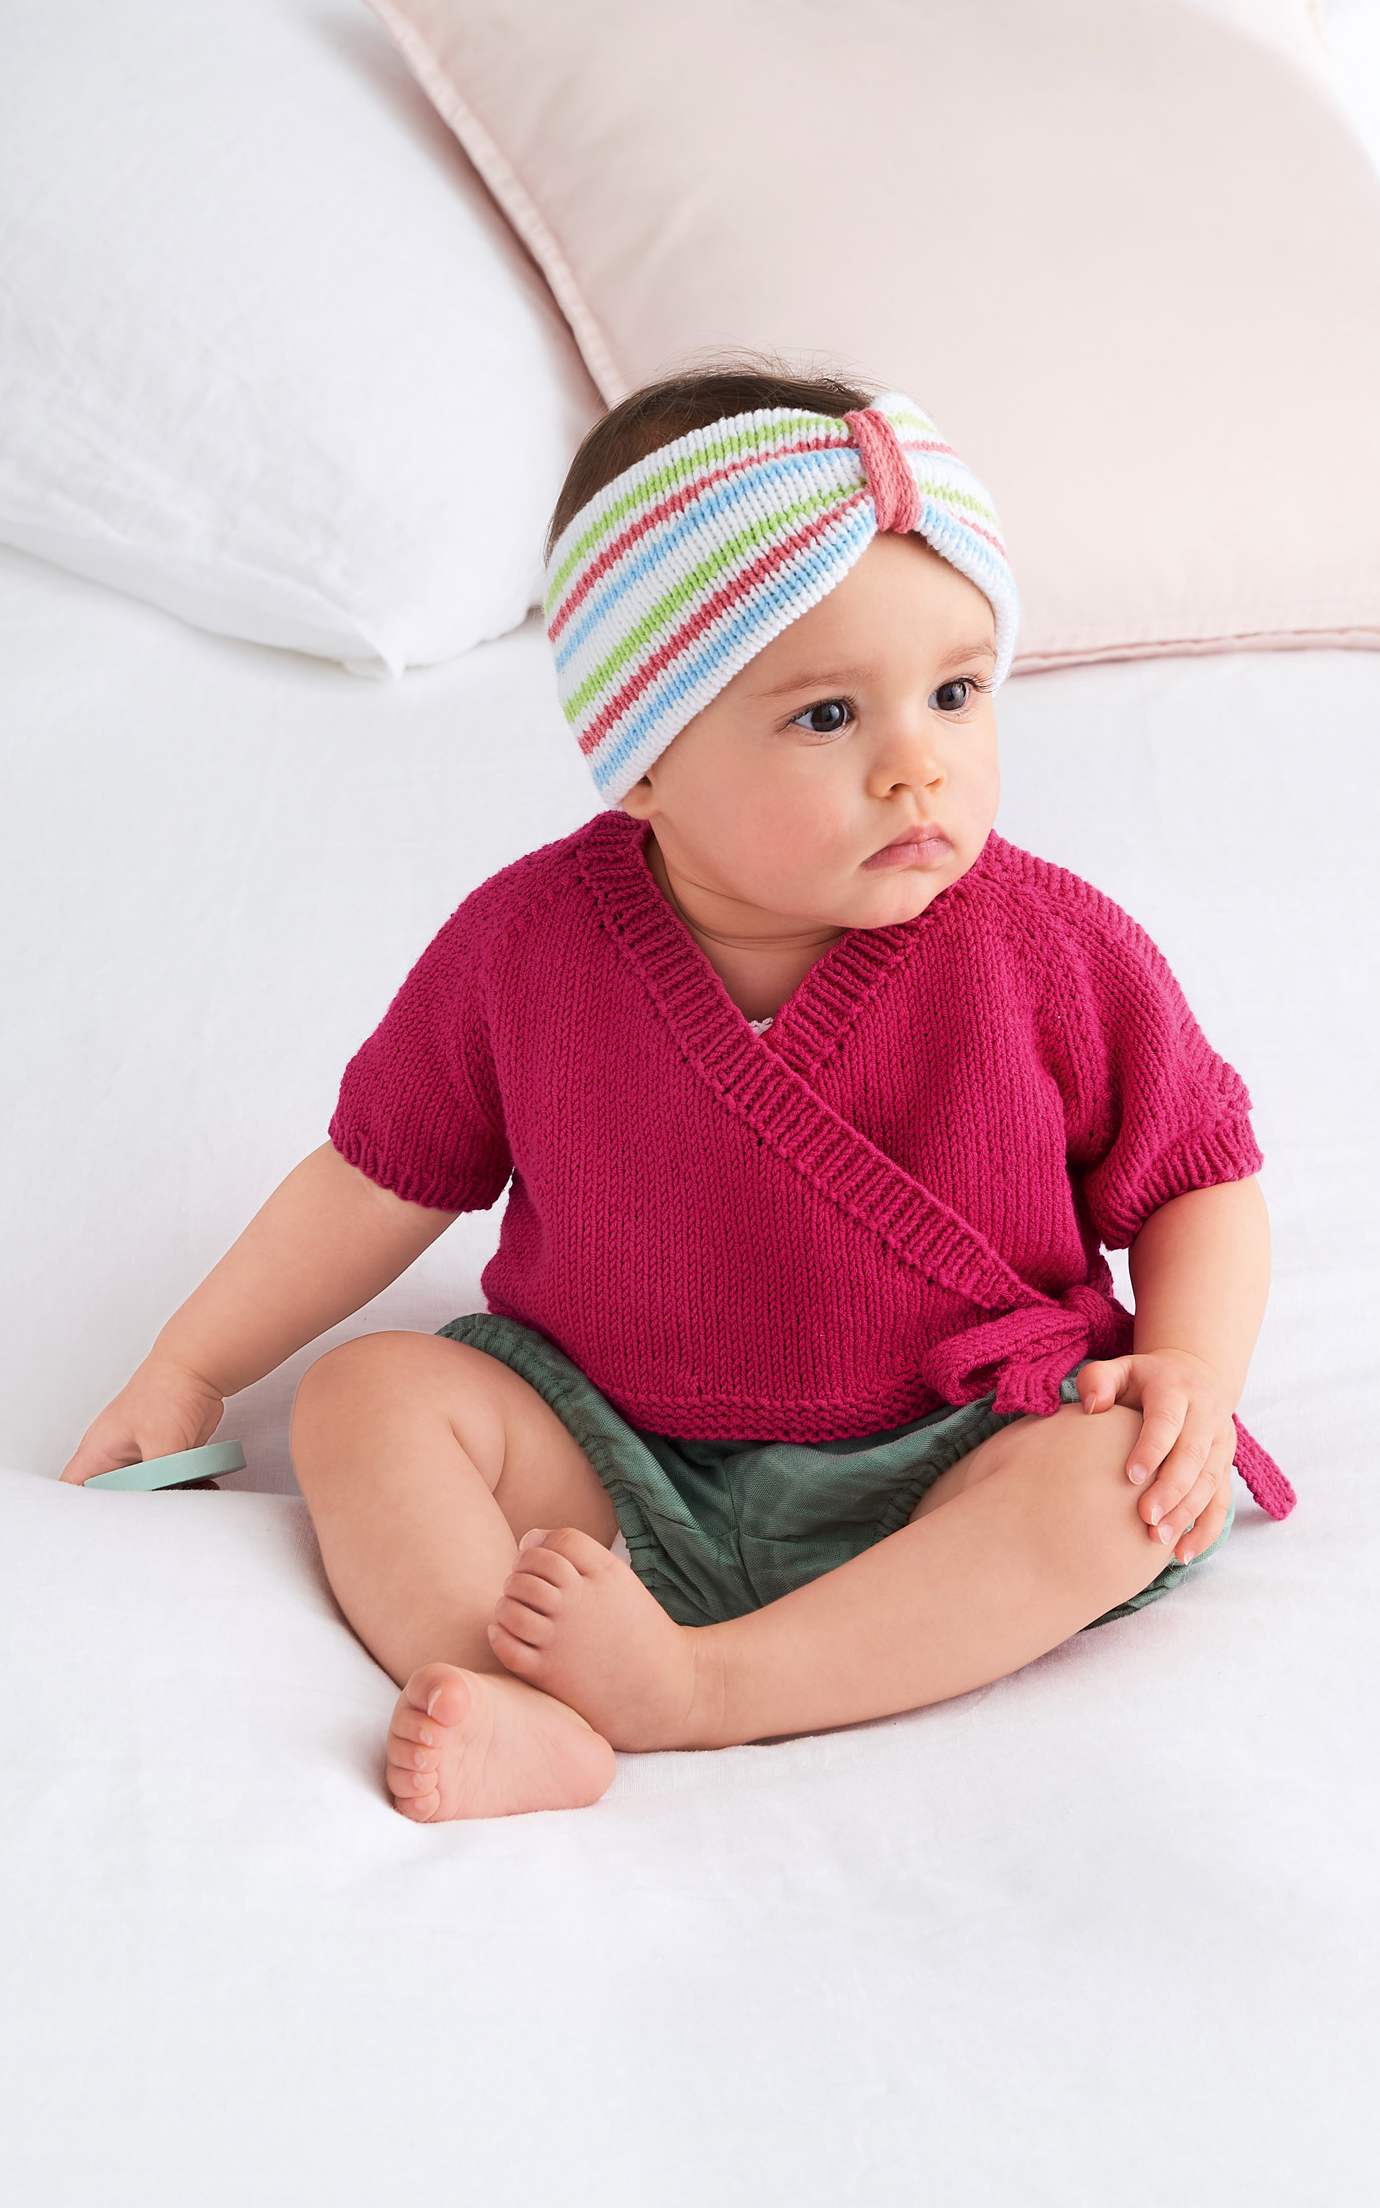 Baby Wickeljacke - Strickset von LANA GROSSA jetzt online kaufen bei OONIQUE